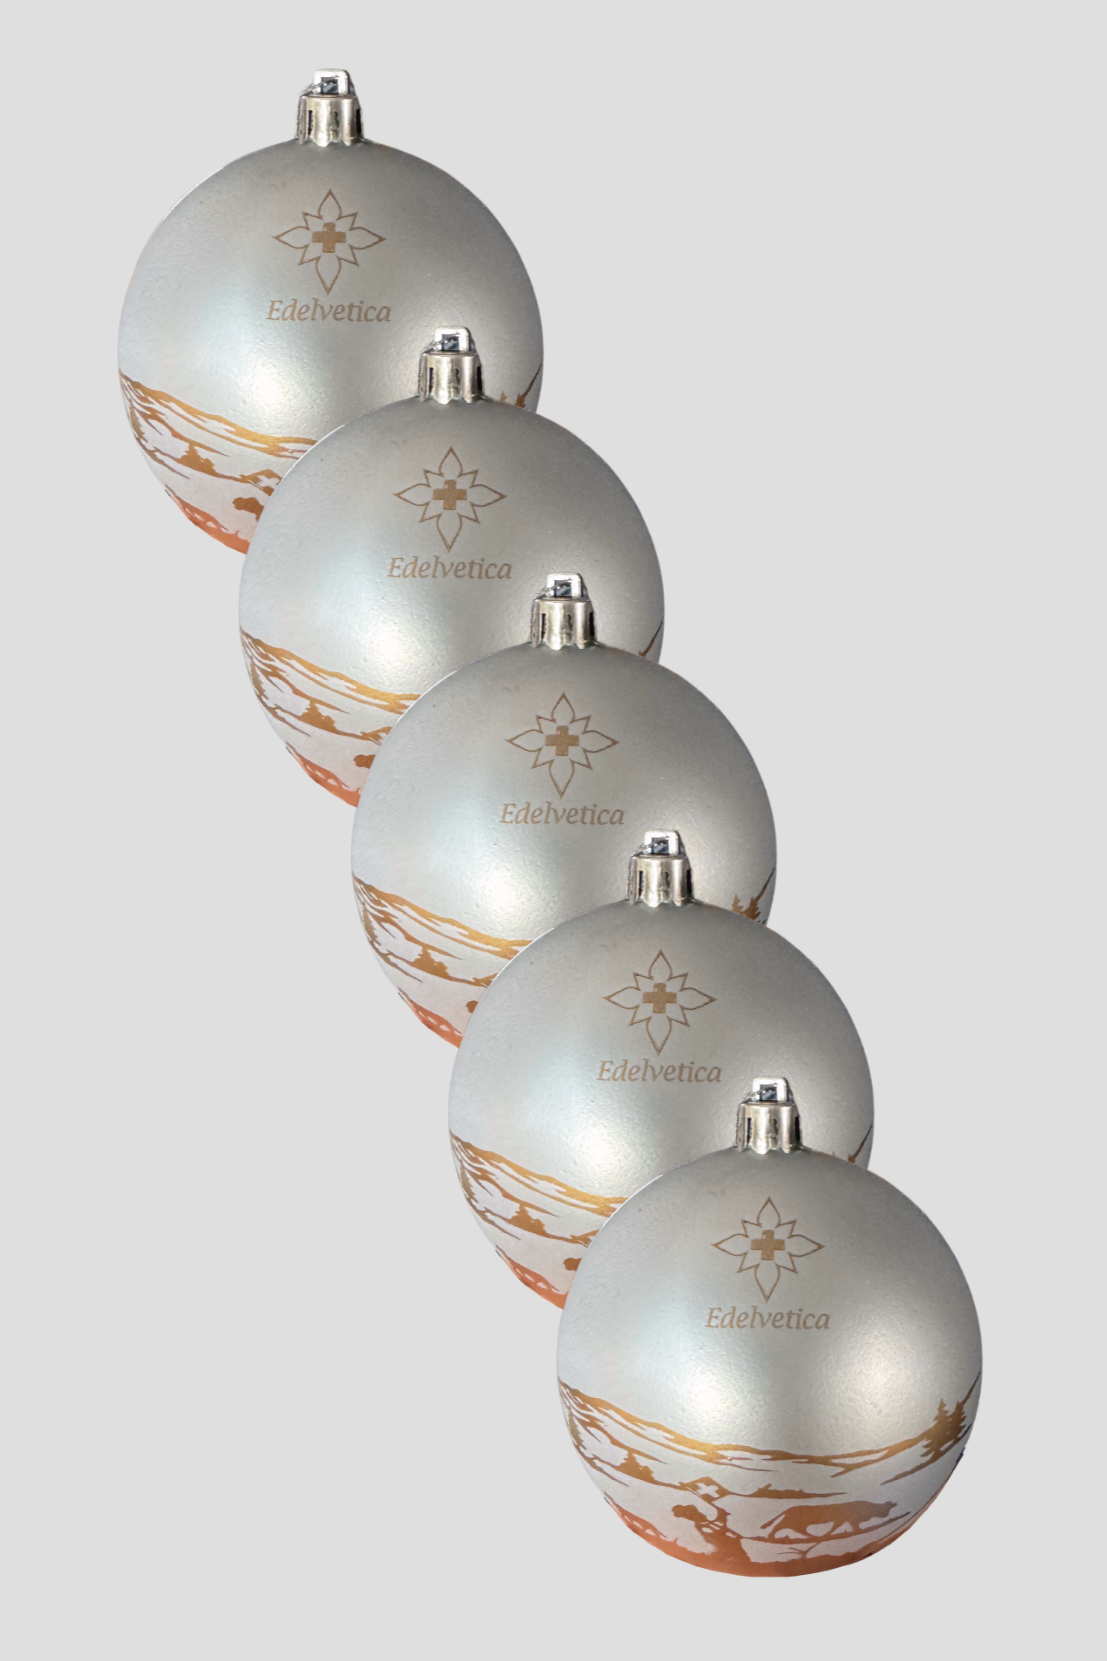 Edelvetica Weihnachtskugeln im 5er-Pack, eine festliche und elegante Dekoration für die Weihnachtszeit. Jede Kugel präsentiert ein einzigartiges Design, das traditionelle Schweizer Motive mit modernem Flair kombiniert. Diese Kugeln sind perfekt, um jedem Weihnachtsbaum einen Hauch von alpiner Eleganz zu verleihen.